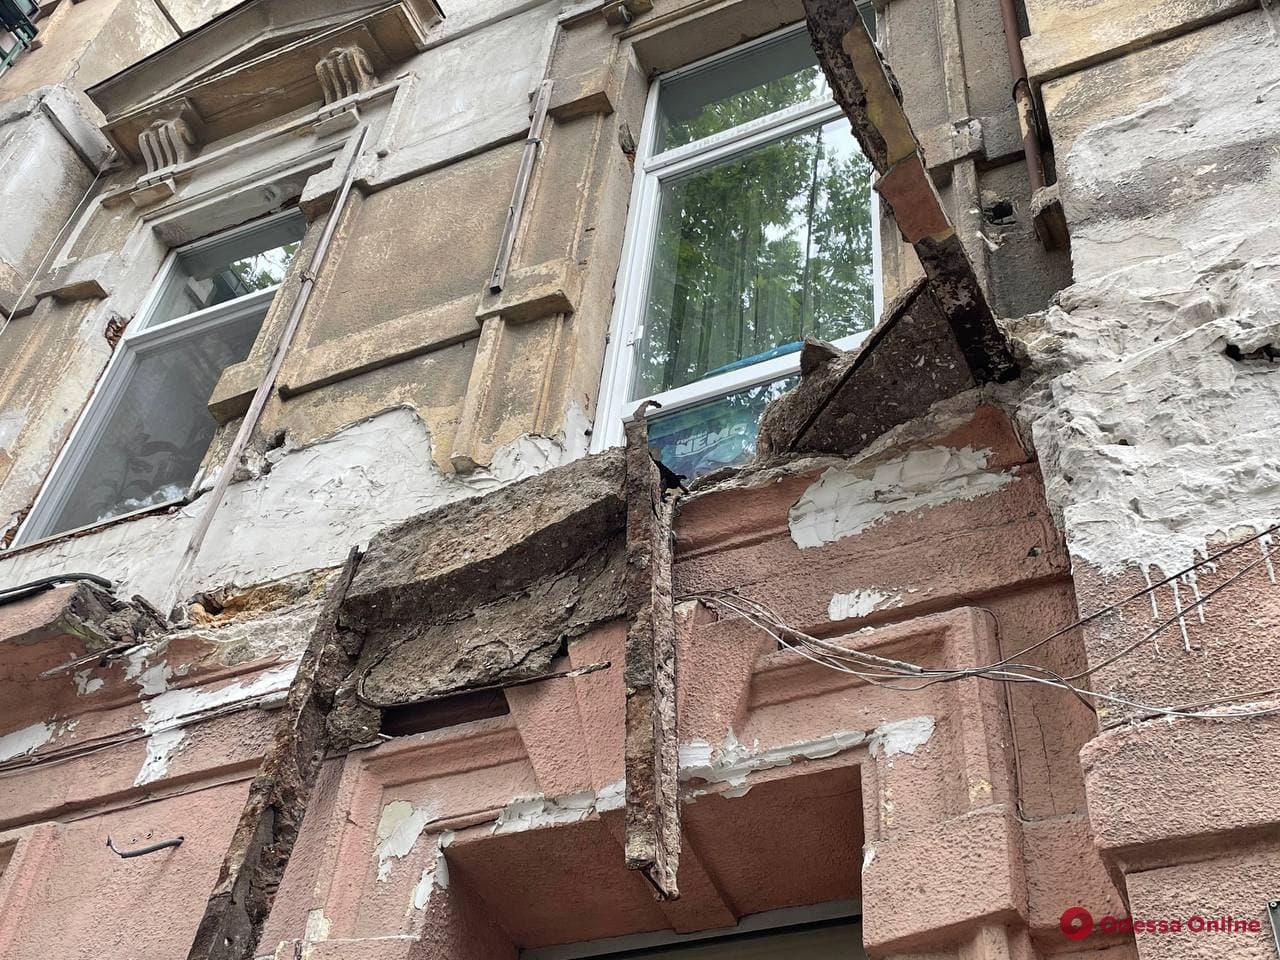 На Большой Арнаутской обвалился балкон дома-памятника архитектуры (фото)